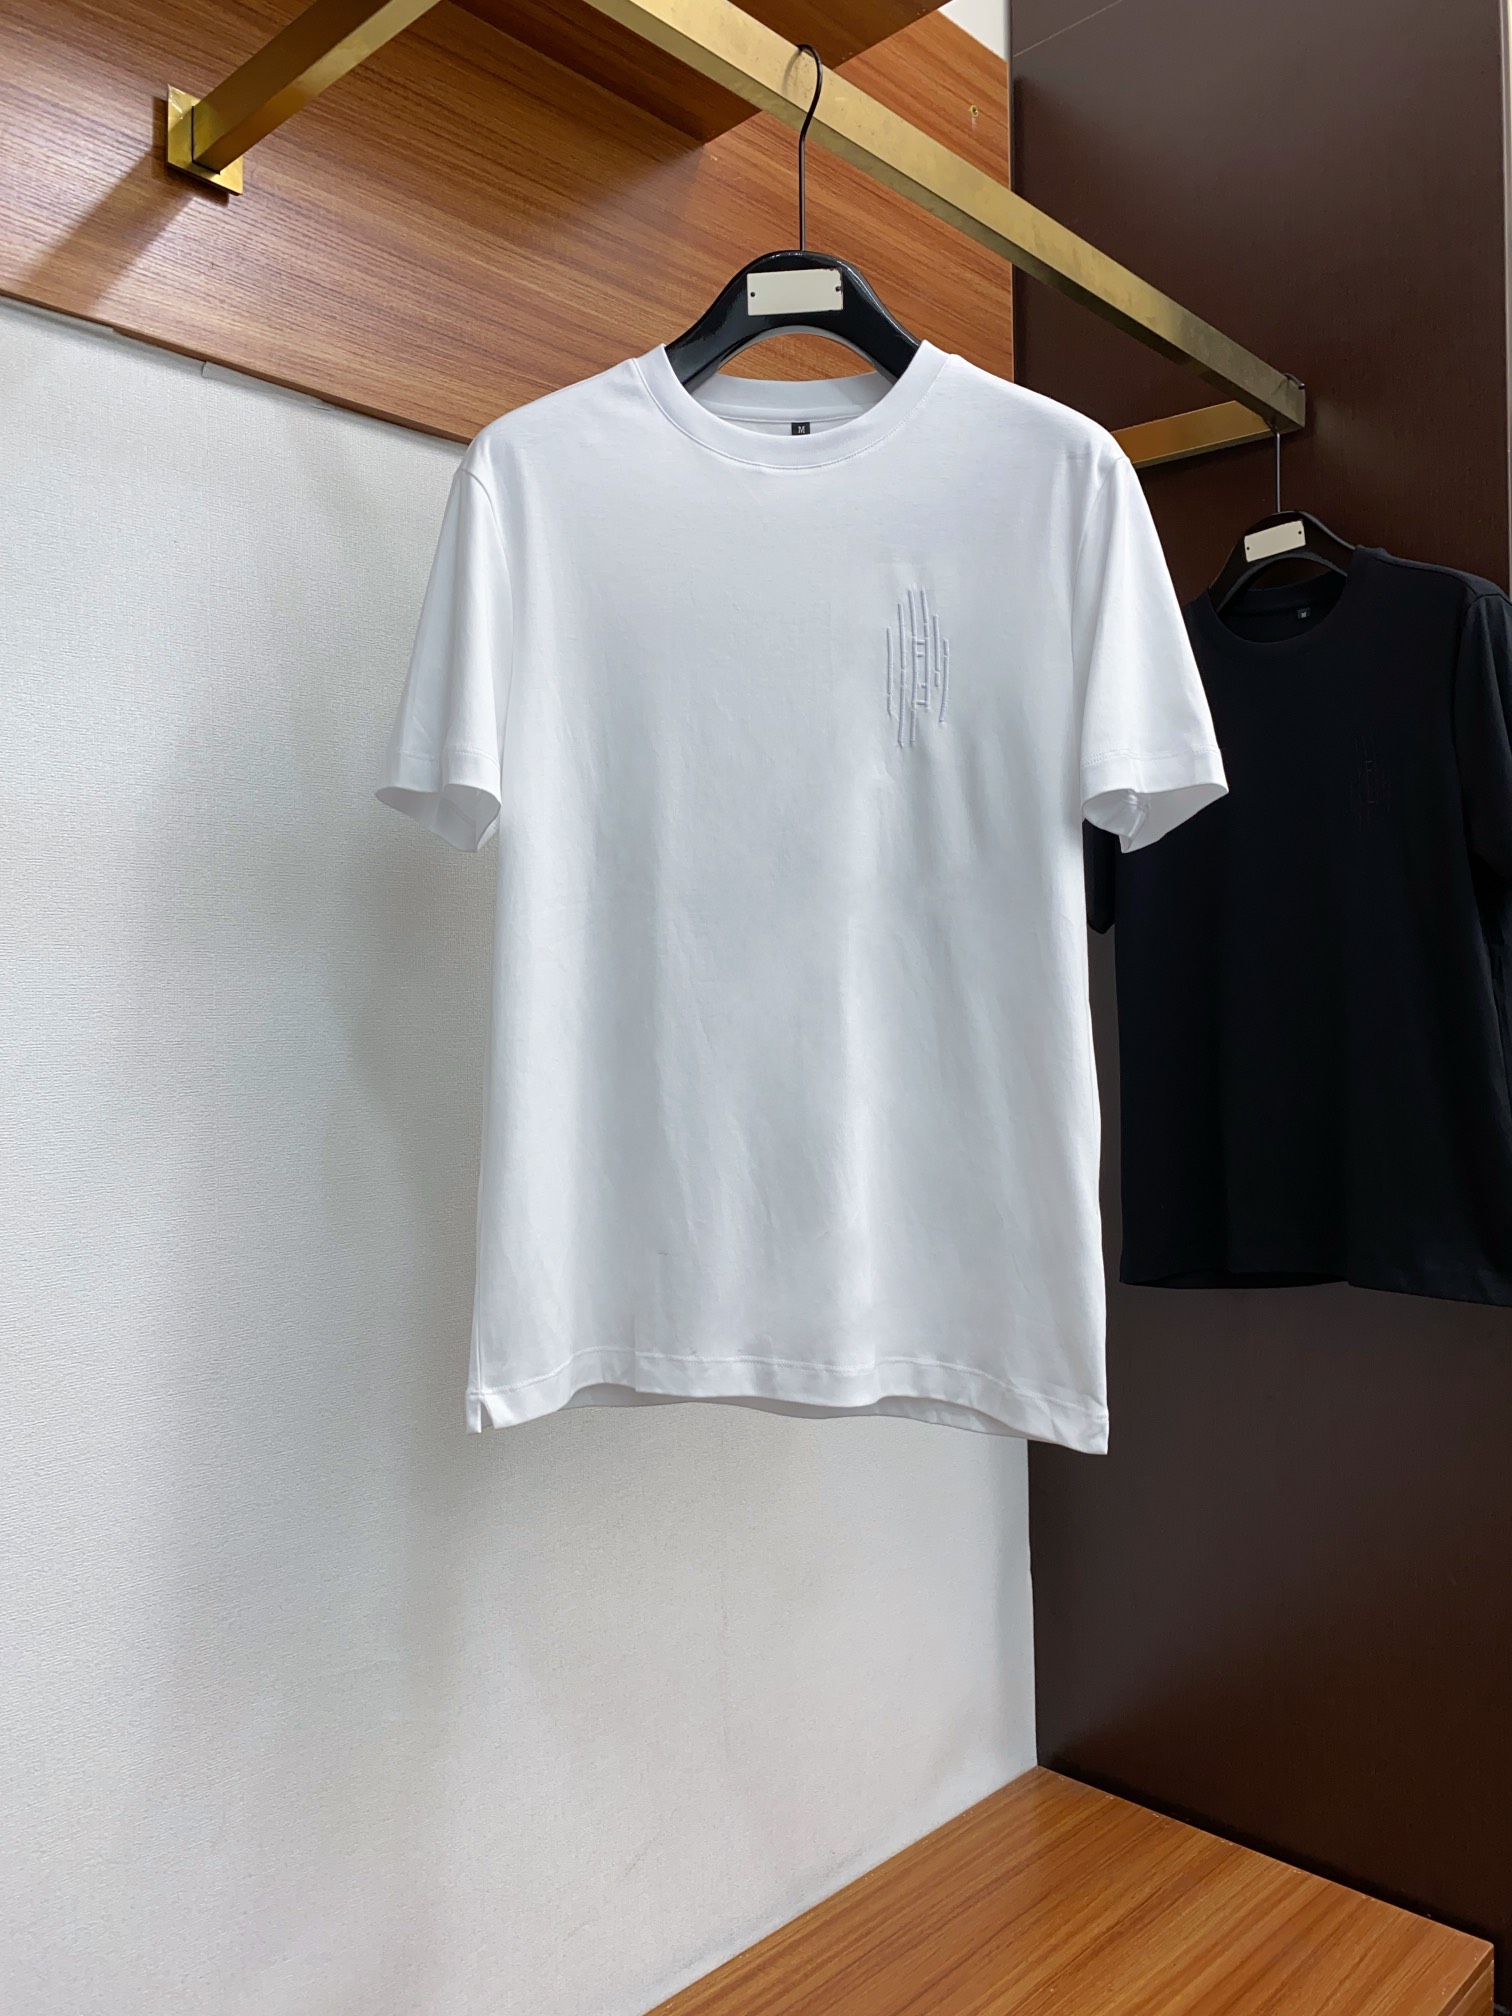 fendi ワイシャツスーパーコピー トップス 綿100% プリント 短袖 ゆったり シンプル 柔らかい メンズ ホワイト_1